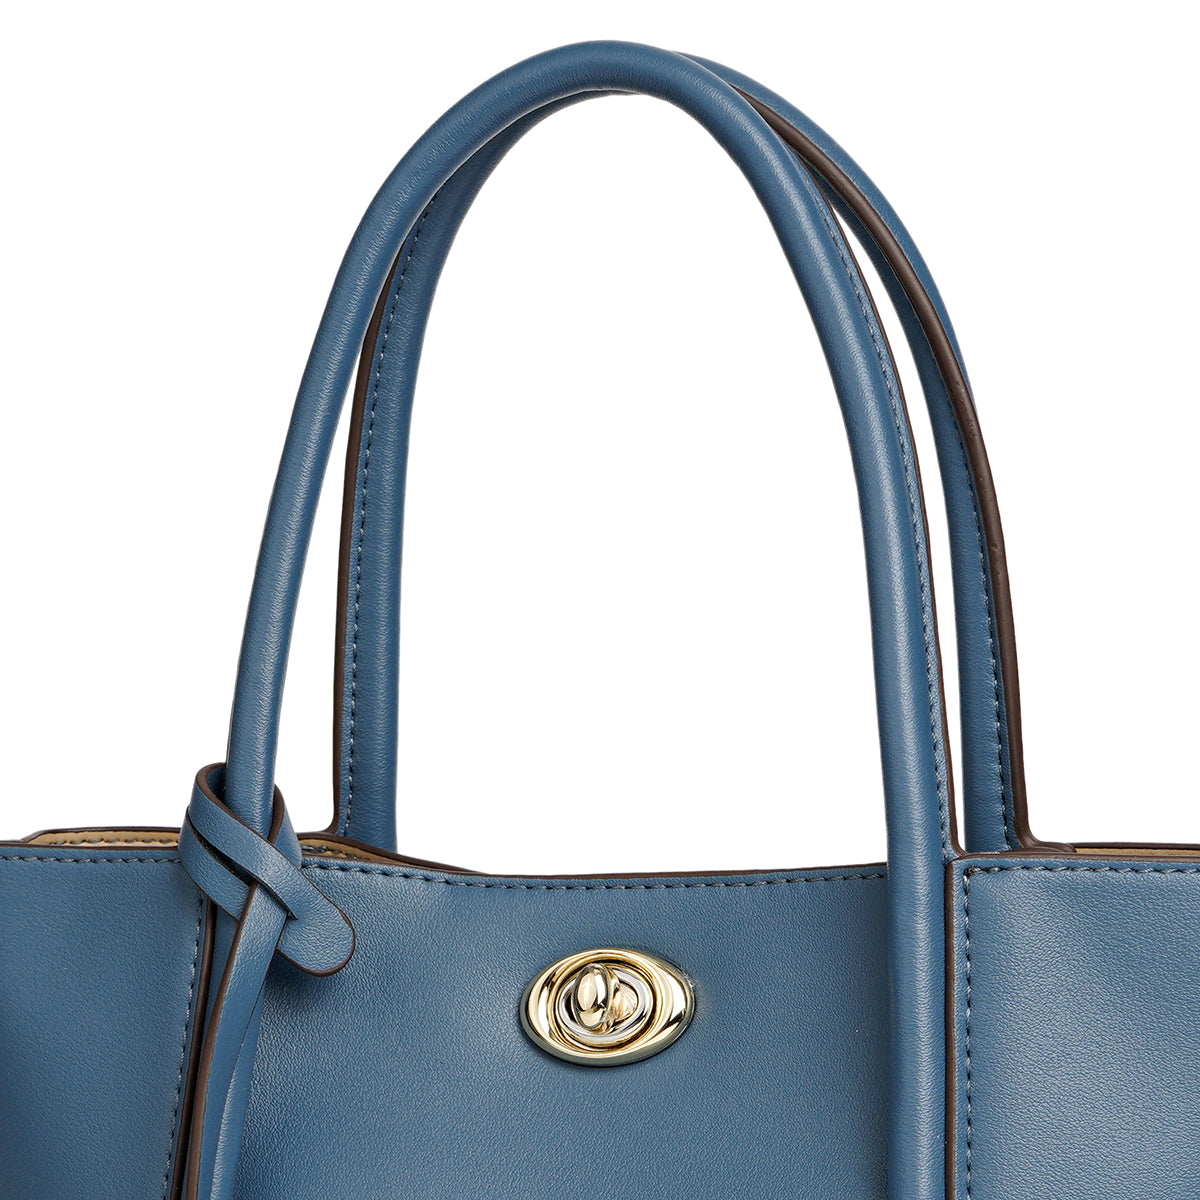 Handbag with shoulder strap, distinctive design, width 25 cm, maroon or blue